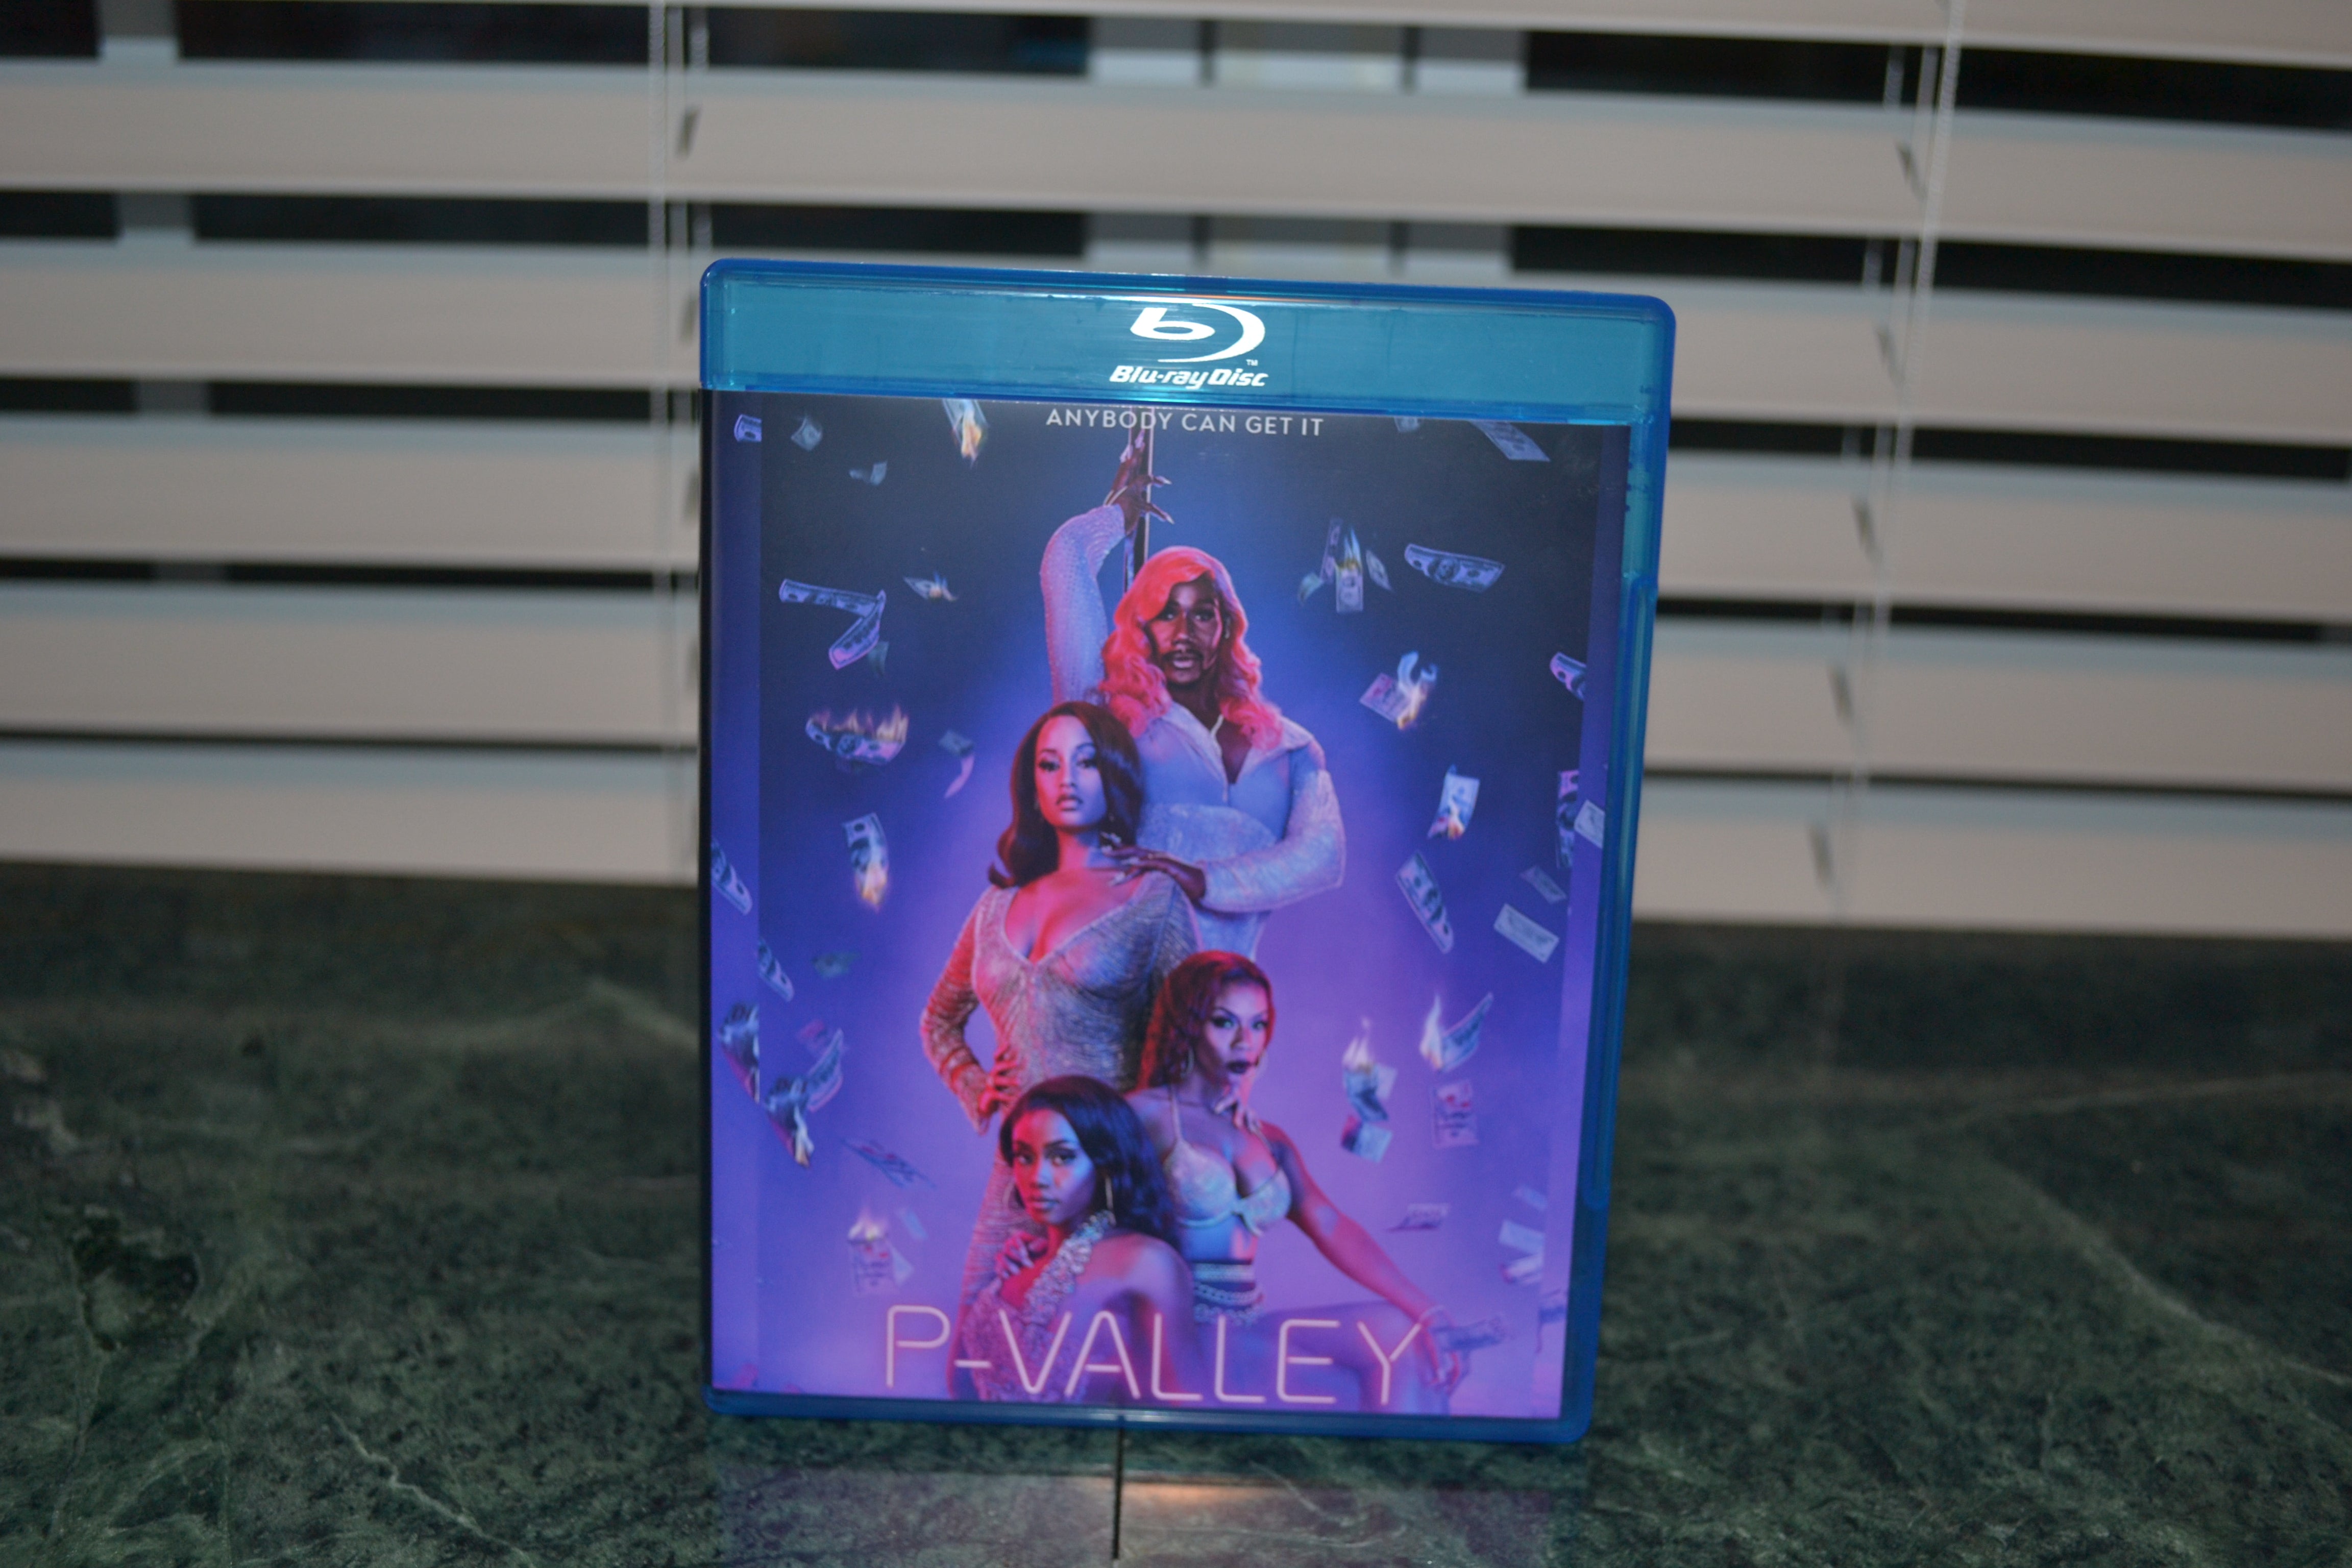 P-Vally Season 2 Blu-ray Set